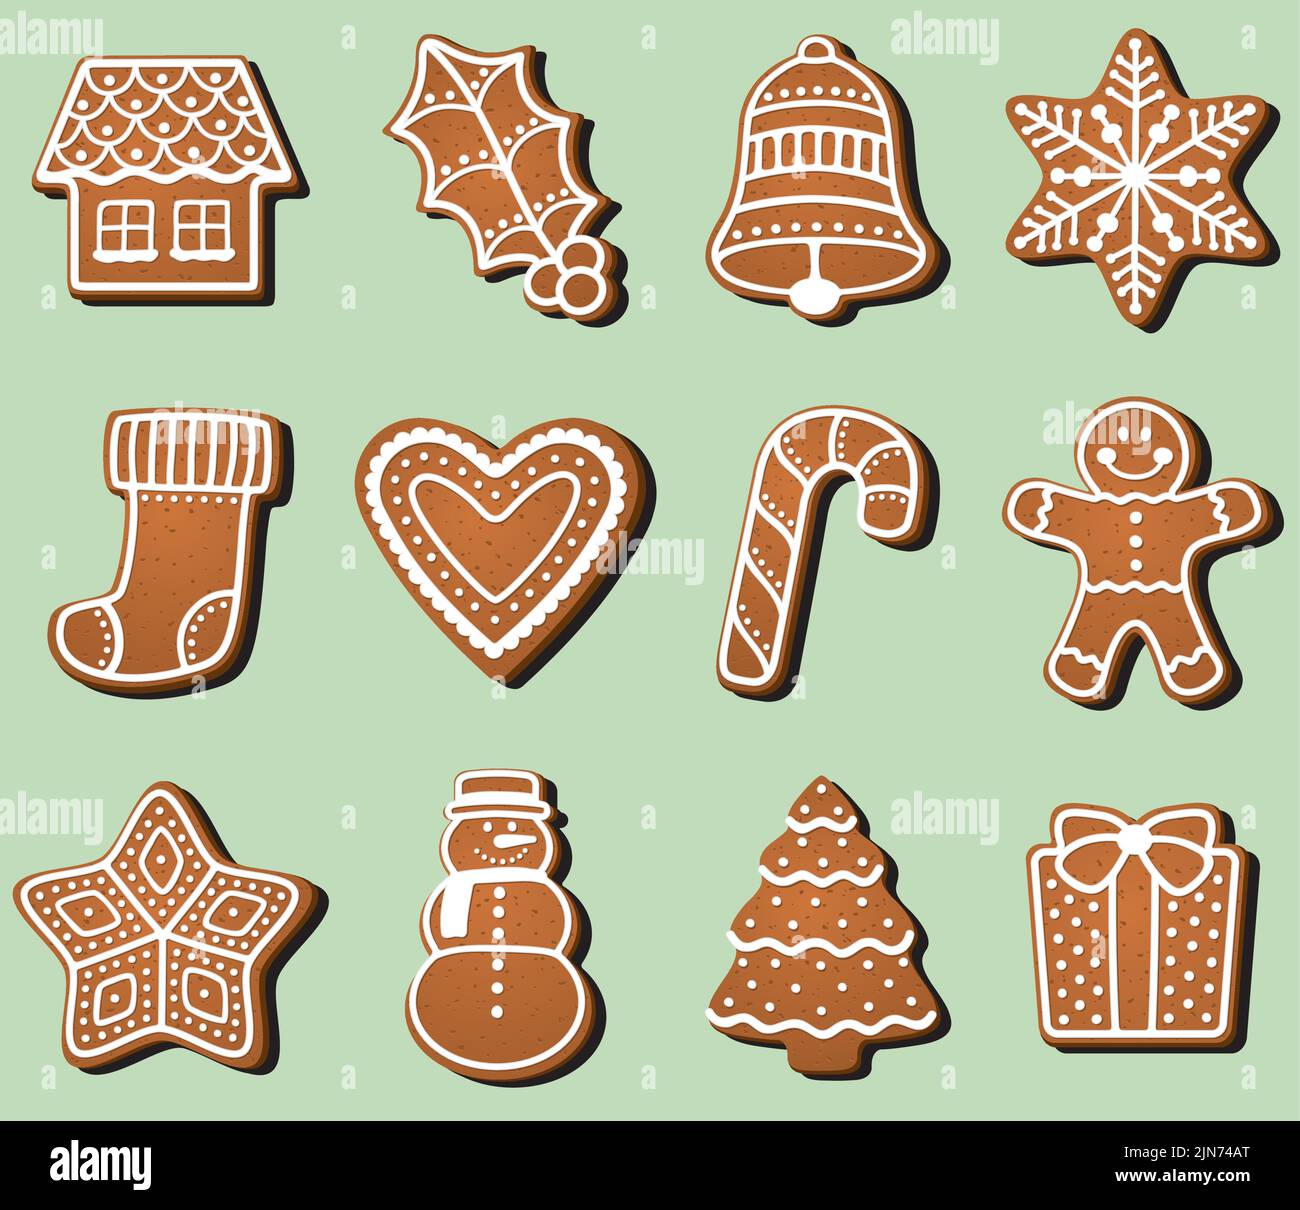 Eine Vektordarstellung einer Gruppe von weihnachtlichen, mattierten Lebkuchen in verschiedenen Weihnachts-Ikonen-Formen. Stock Vektor